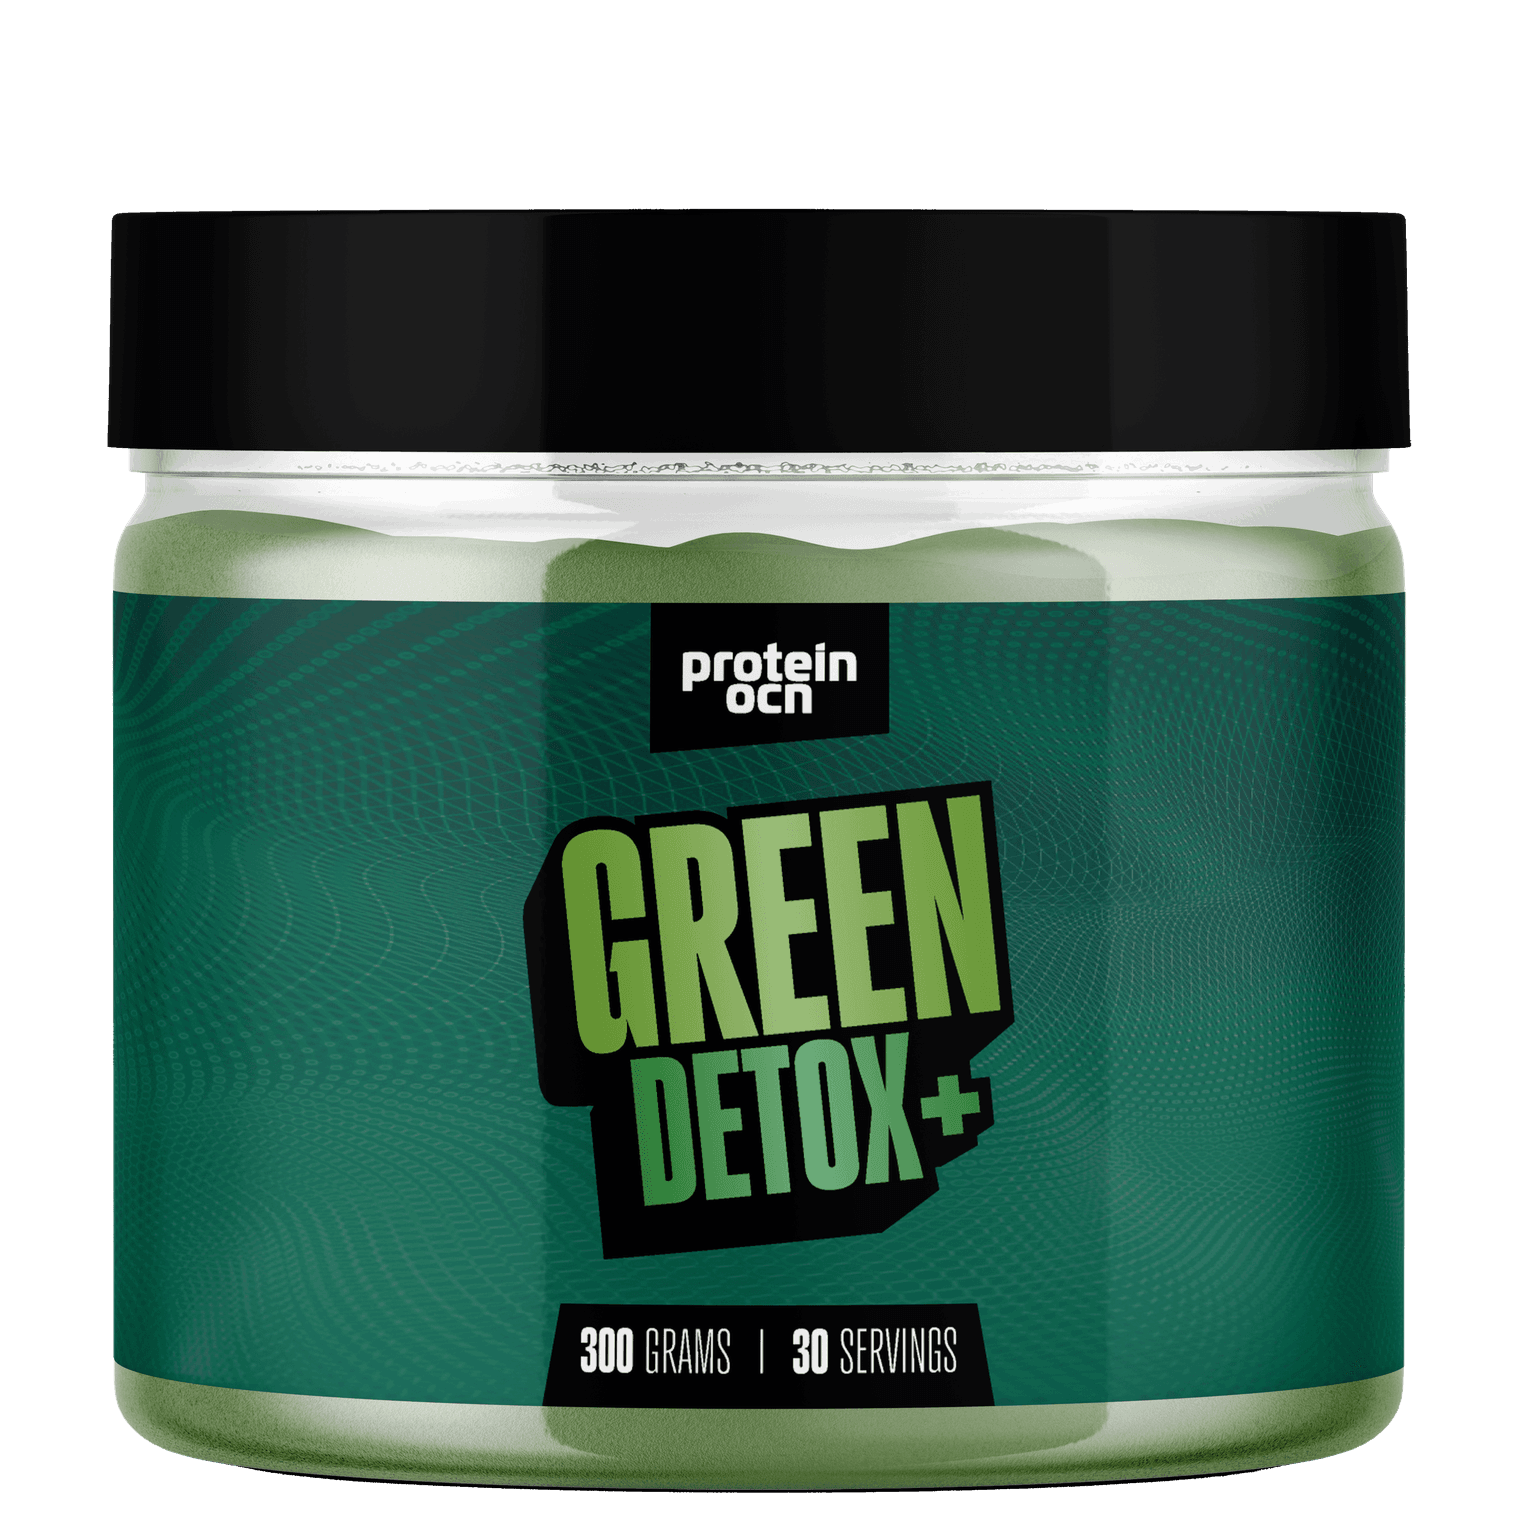 GREEN DETOX+